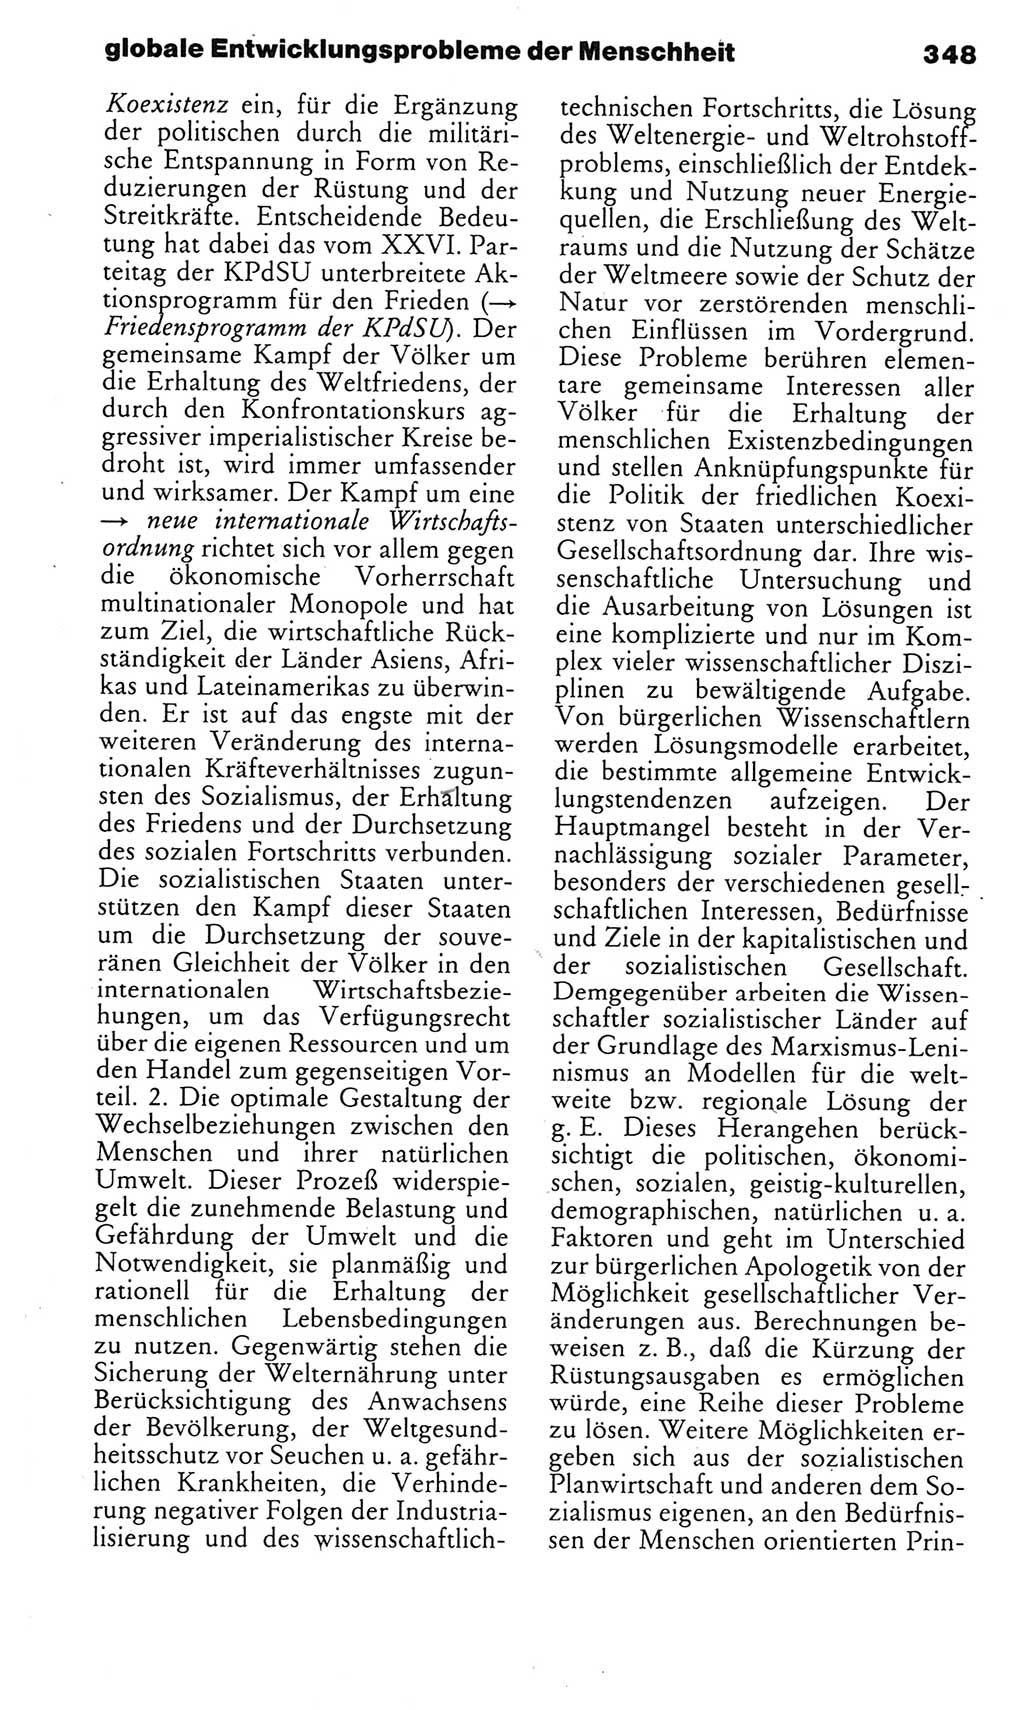 Kleines politisches Wörterbuch [Deutsche Demokratische Republik (DDR)] 1985, Seite 348 (Kl. pol. Wb. DDR 1985, S. 348)